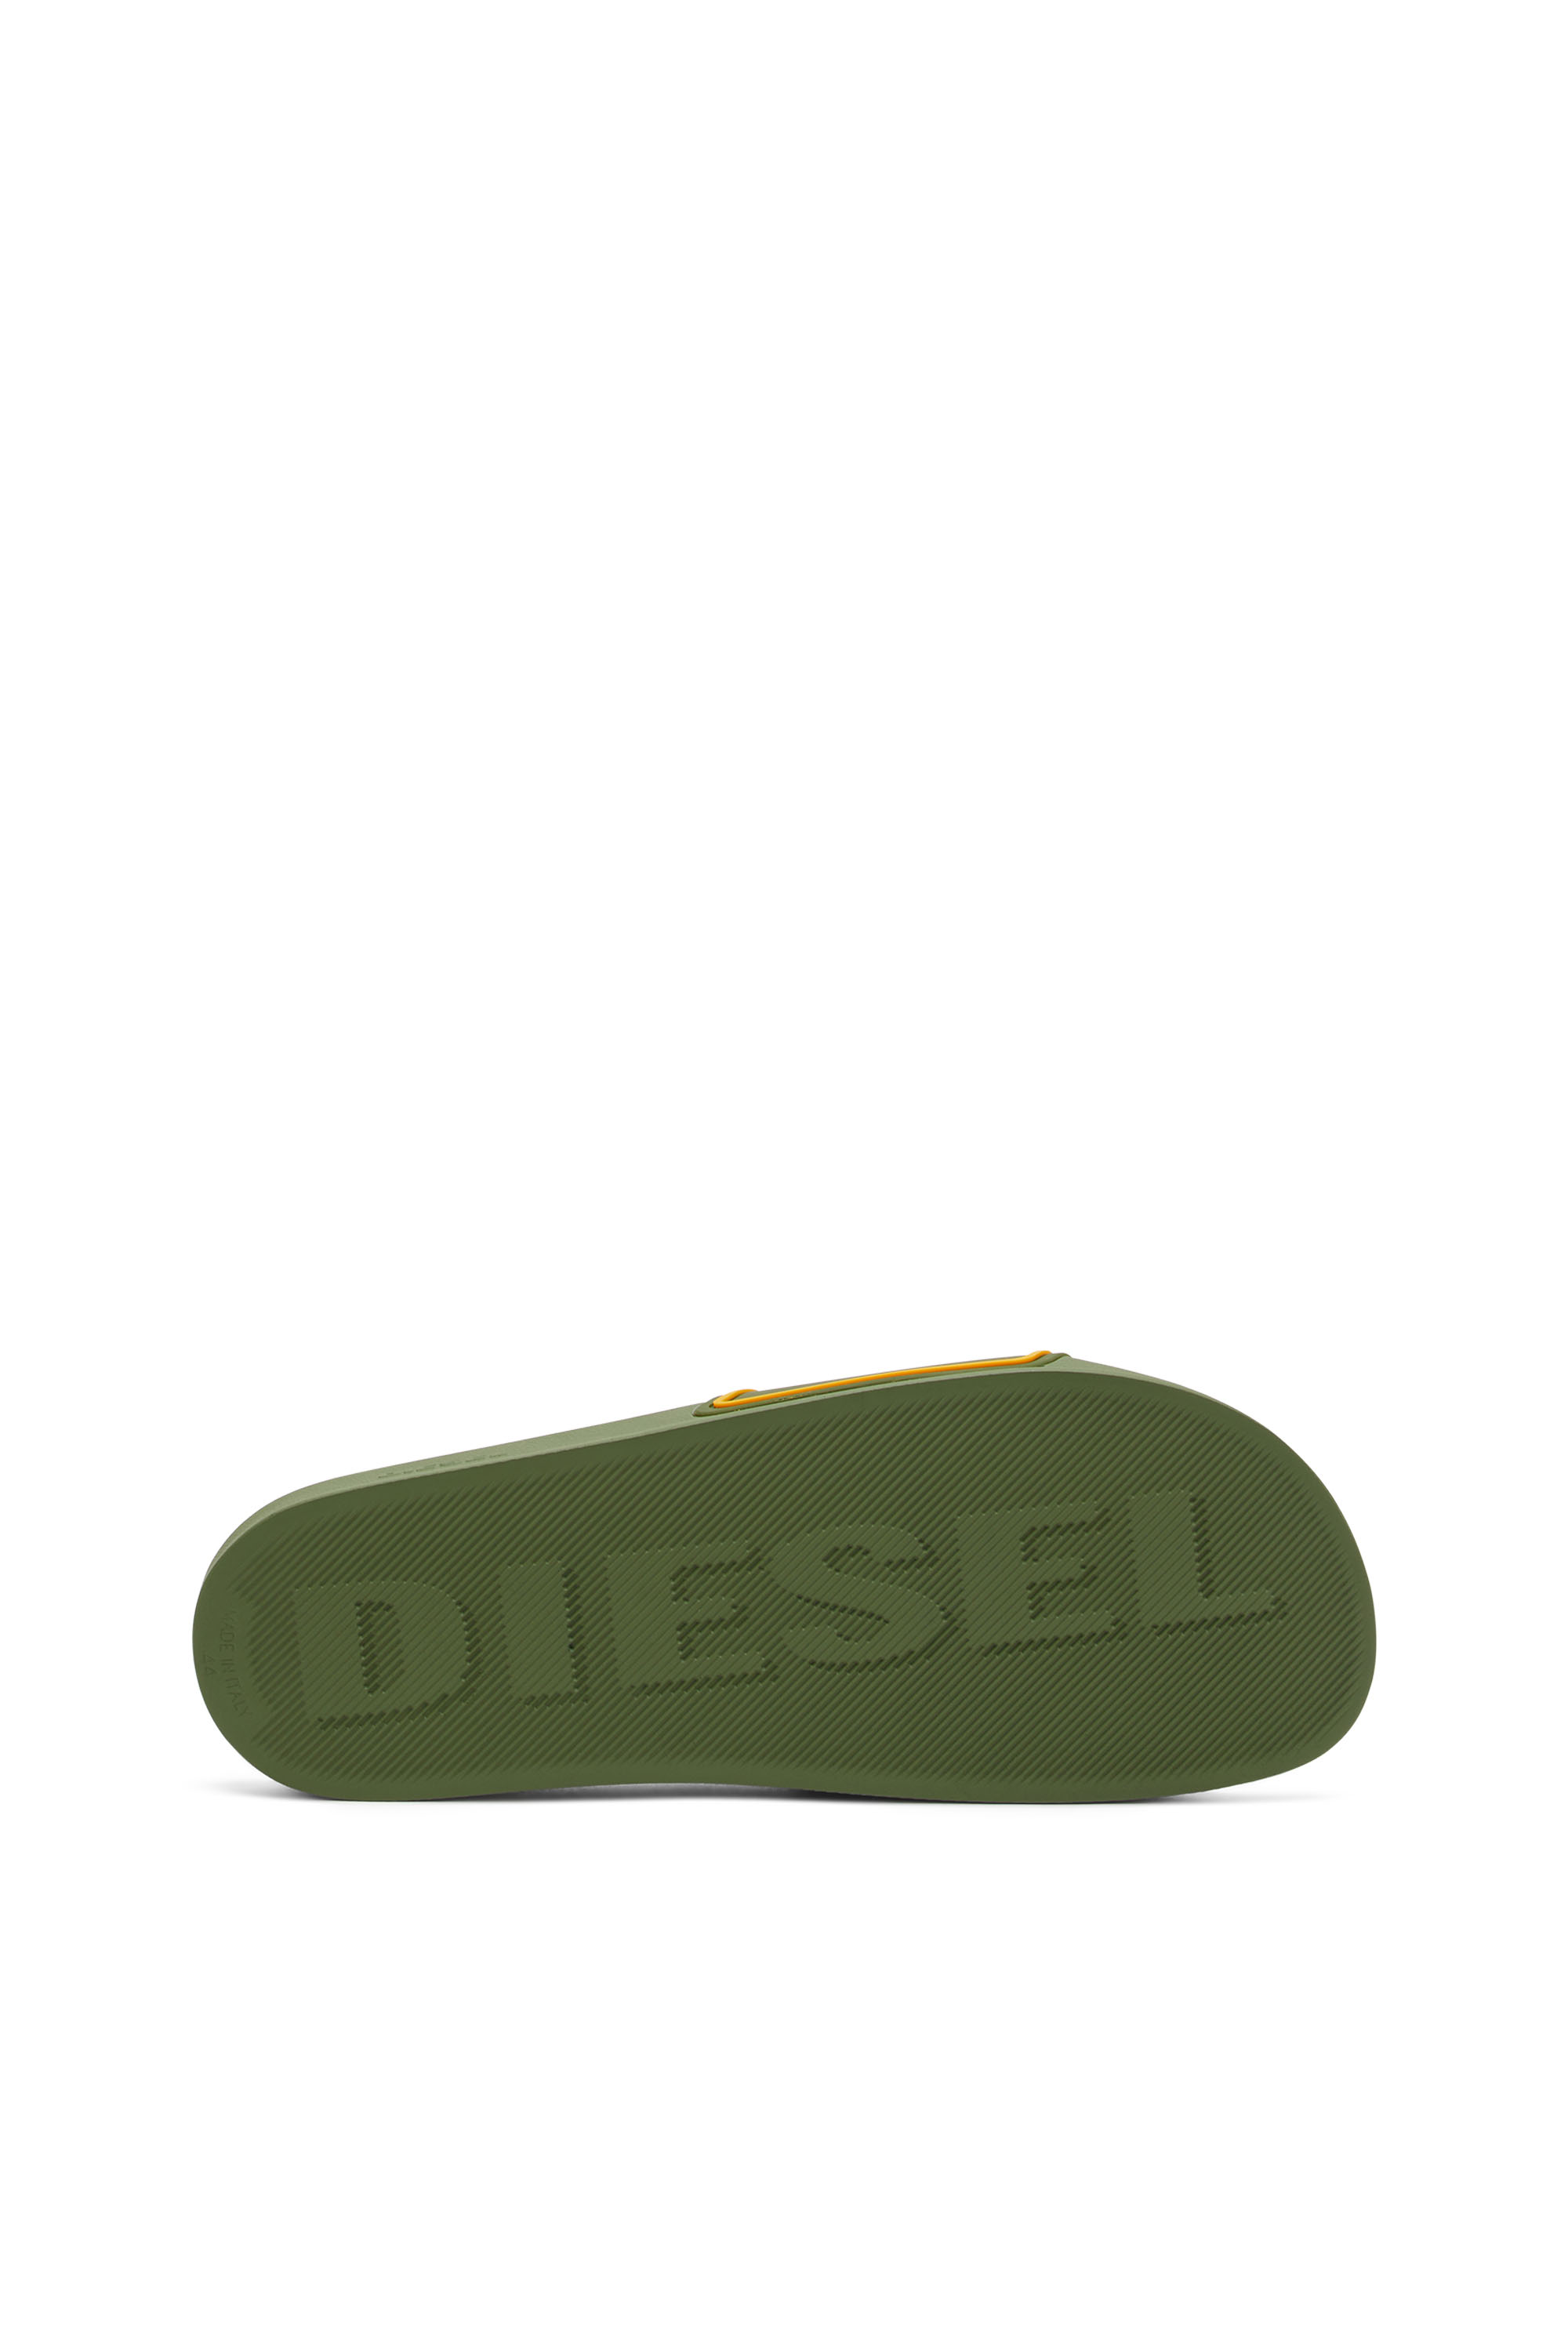 Diesel - SA-MAYEMI CC, Green - Image 4